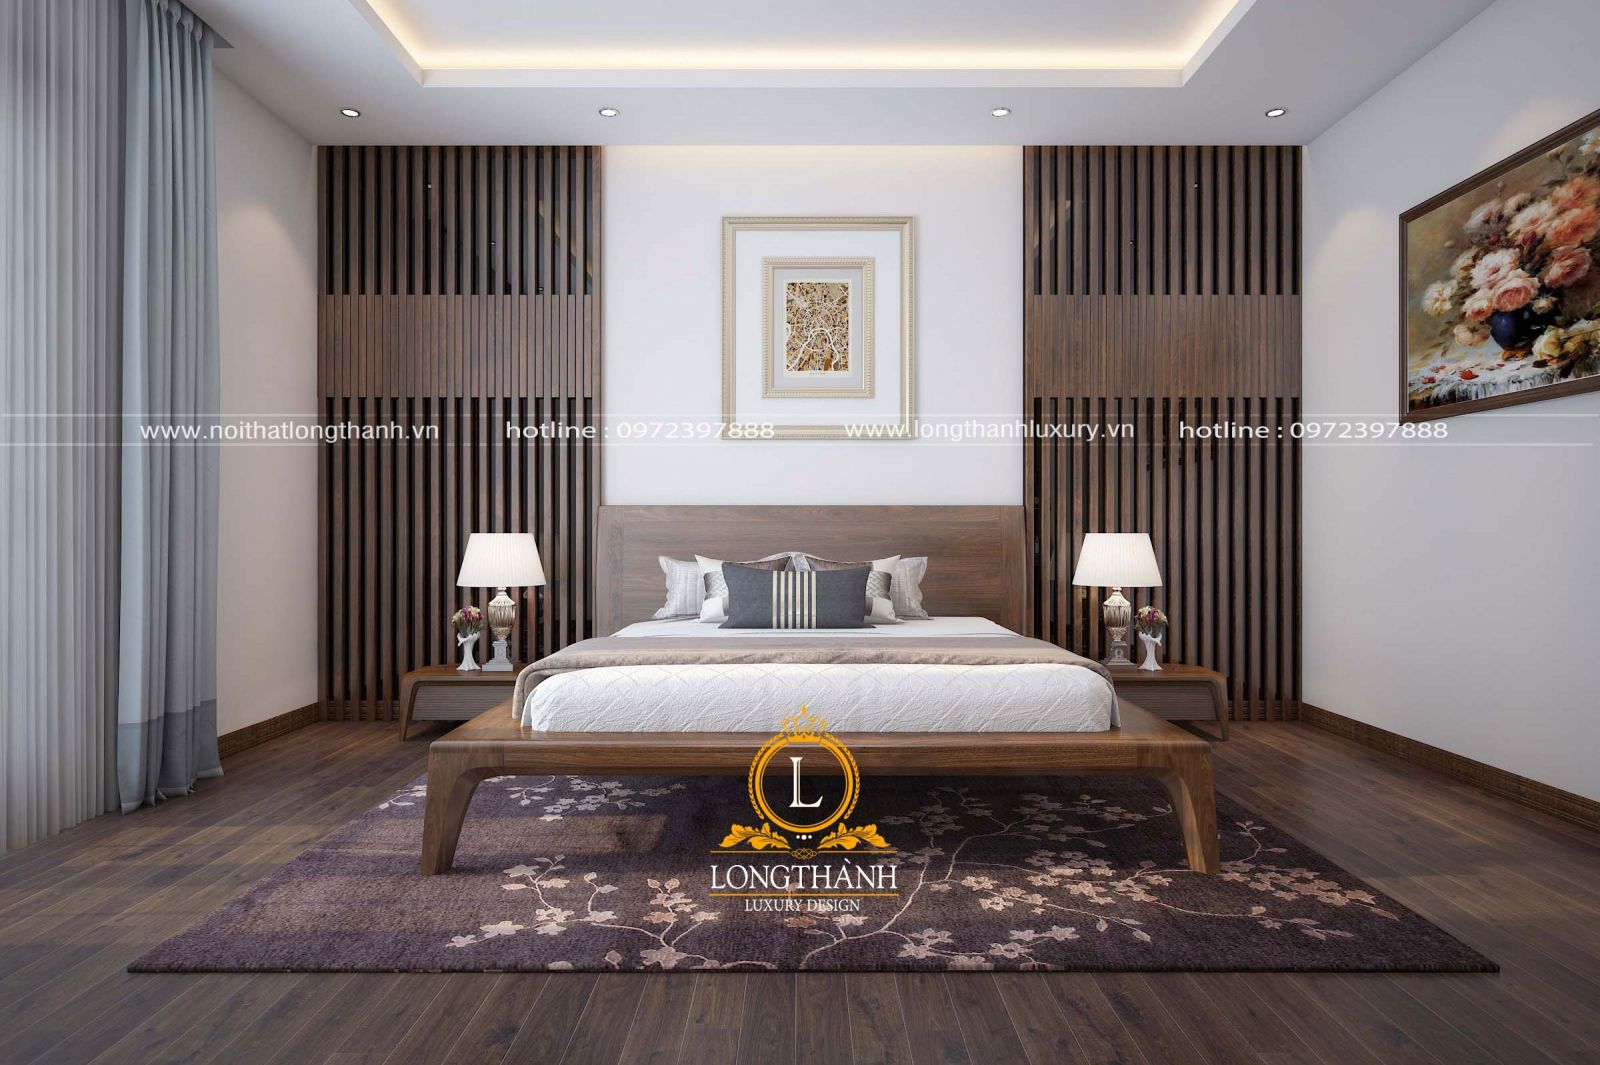 Mẫu phòng ngủ hiện đại đẹp làm từ gỗ tự nhiên